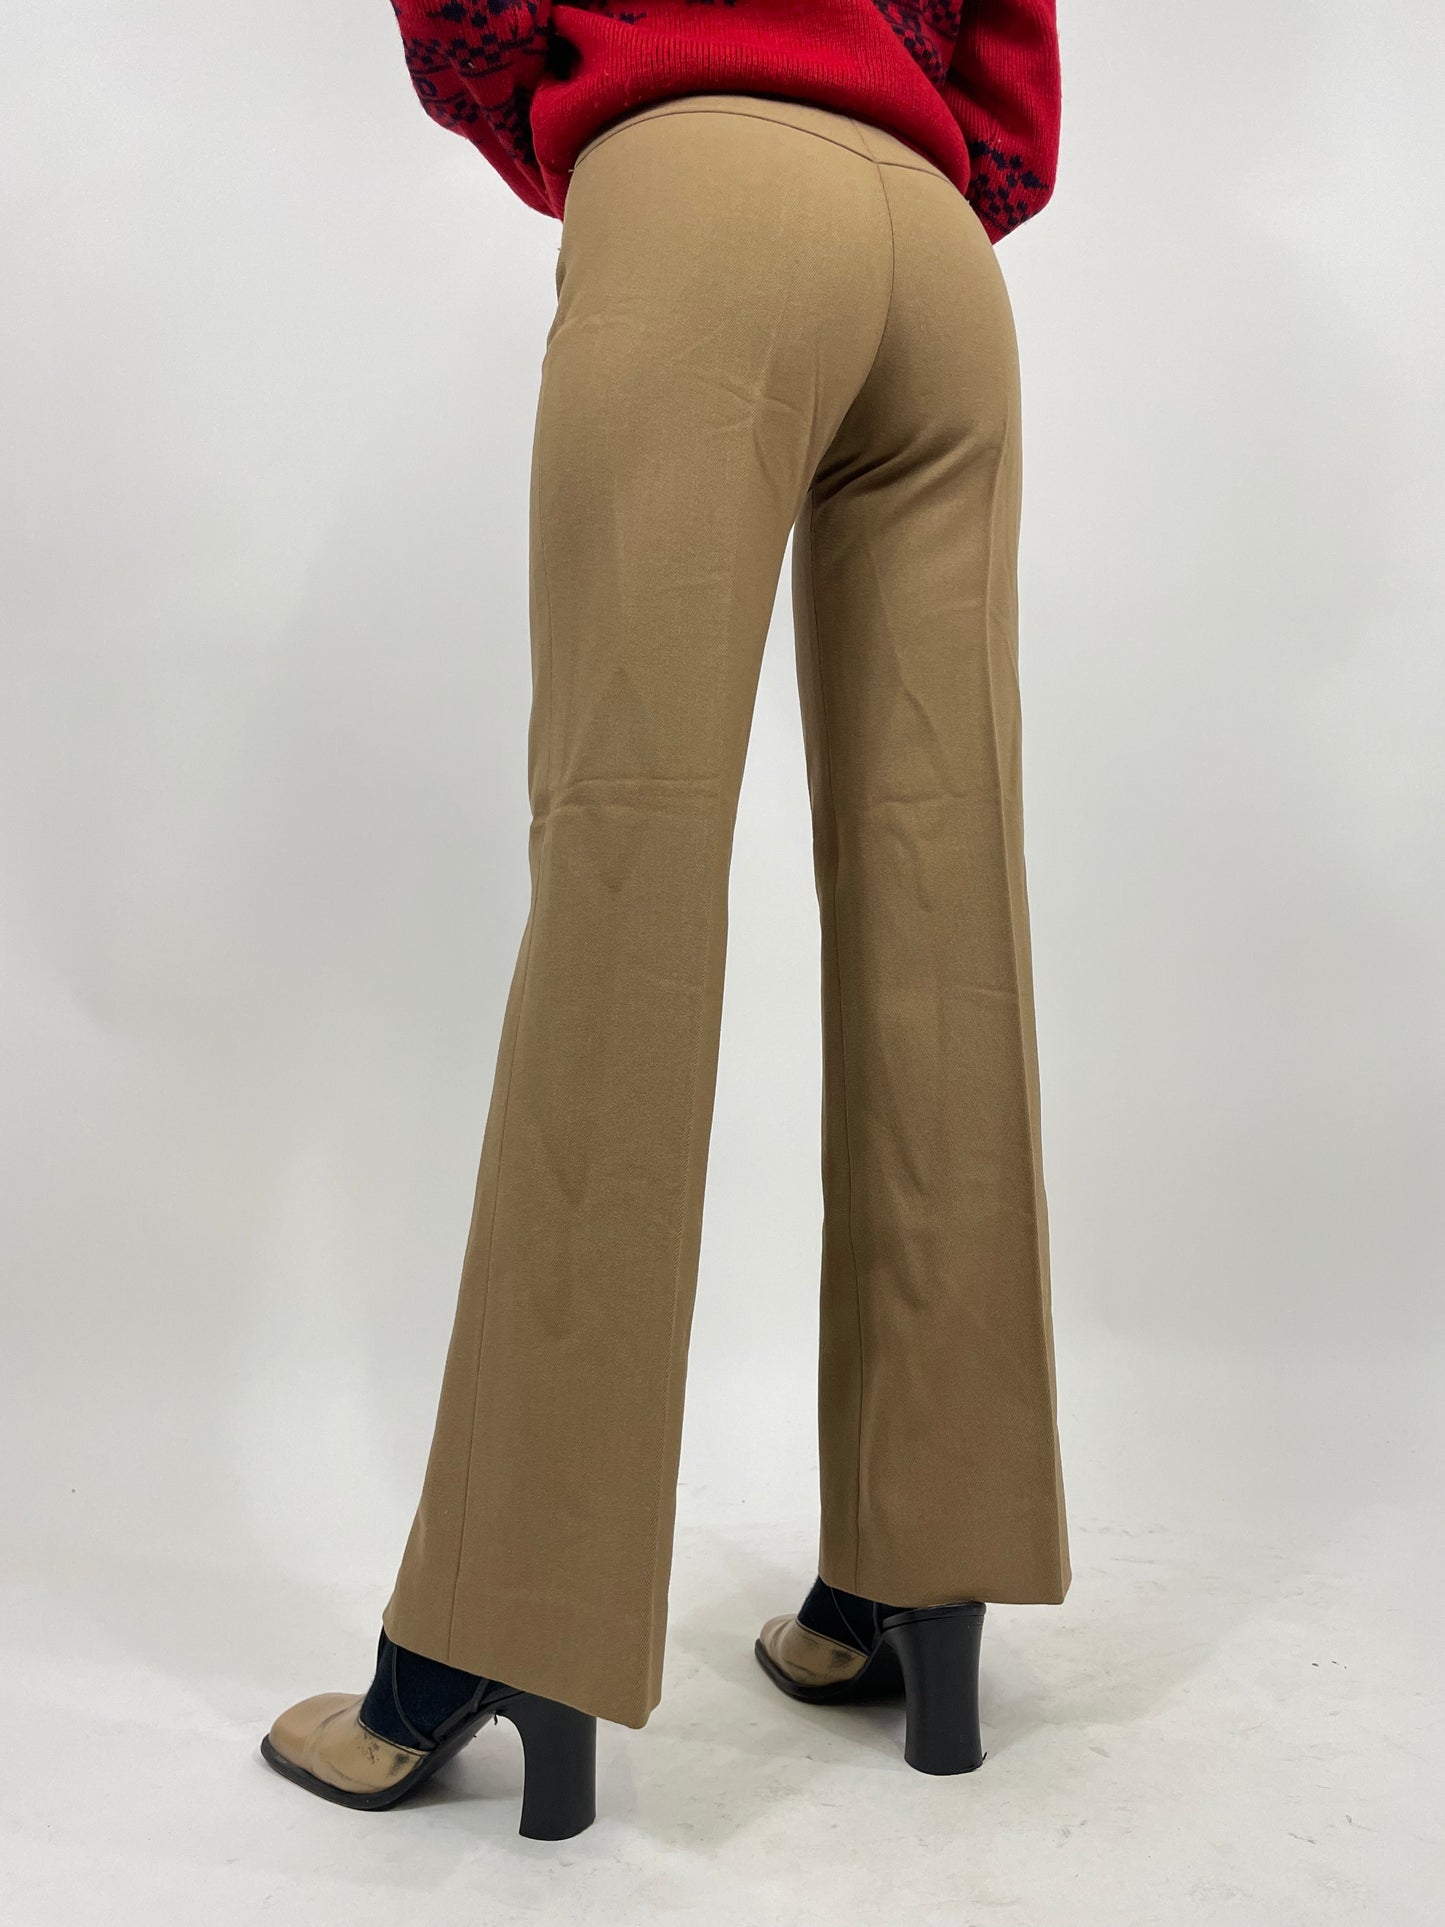 Pantalone sartoriale 1970s